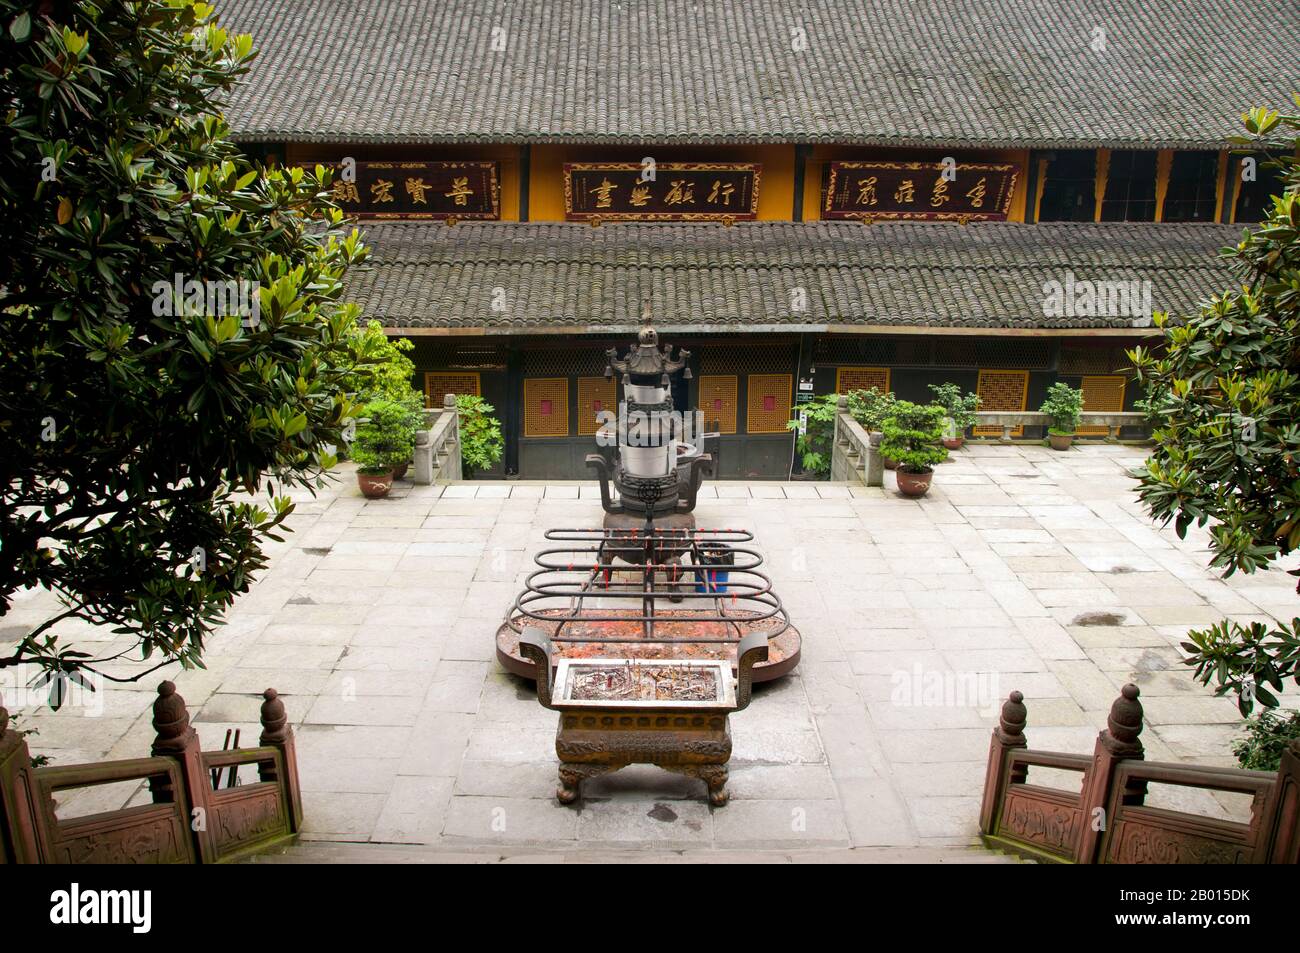 Cina: Baoguo si (Tempio della nazione dichiarante), ai piedi di Emeishan (Monte Emei), provincia di Sichuan. Baoguo si (Tempio della Nazione Declare), ai piedi del Monte Emei, fu costruito per la prima volta nel XVI secolo durante la Dinastia Ming (1368-1644). A 3,099 metri (10,167 piedi), Mt. Emei è la più alta delle quattro Sacre montagne buddiste della Cina. Il patrono bodhisattva di Emei è Samantabhadra, conosciuto in cinese come Puxian. Fonti del XVI e XVII secolo alludono alla pratica delle arti marziali nei monasteri del Monte Emei. Foto Stock